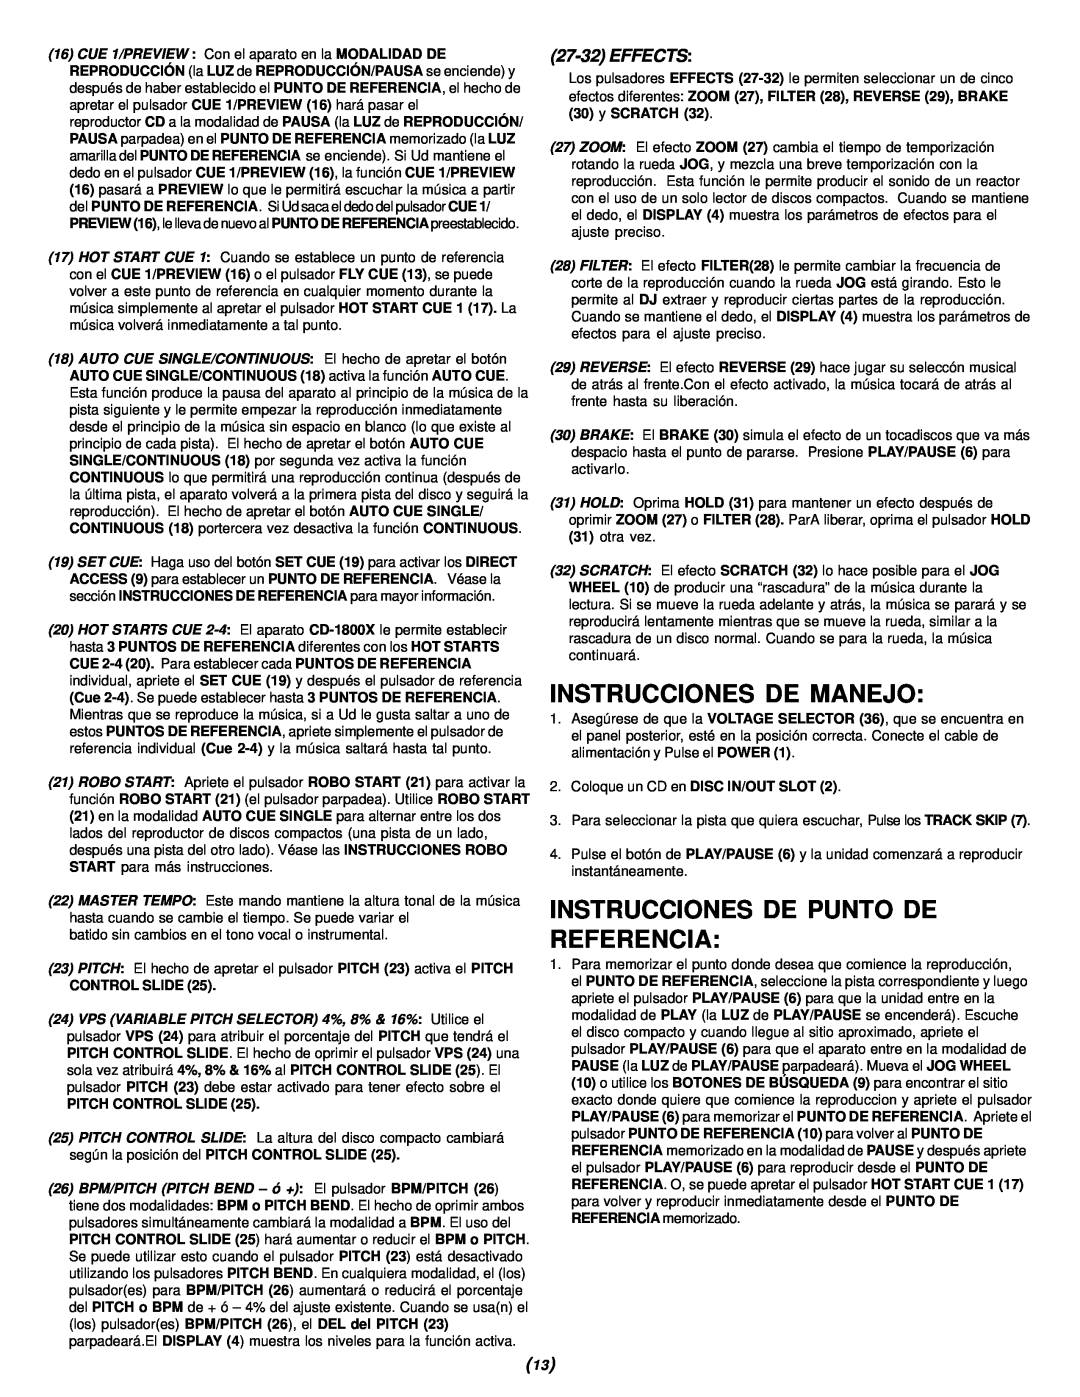 Gemini CD-1800X Instrucciones De Manejo, Instrucciones De Punto De Referencia, 27-32EFFECTS, Control Slide, 30y SCRATCH 